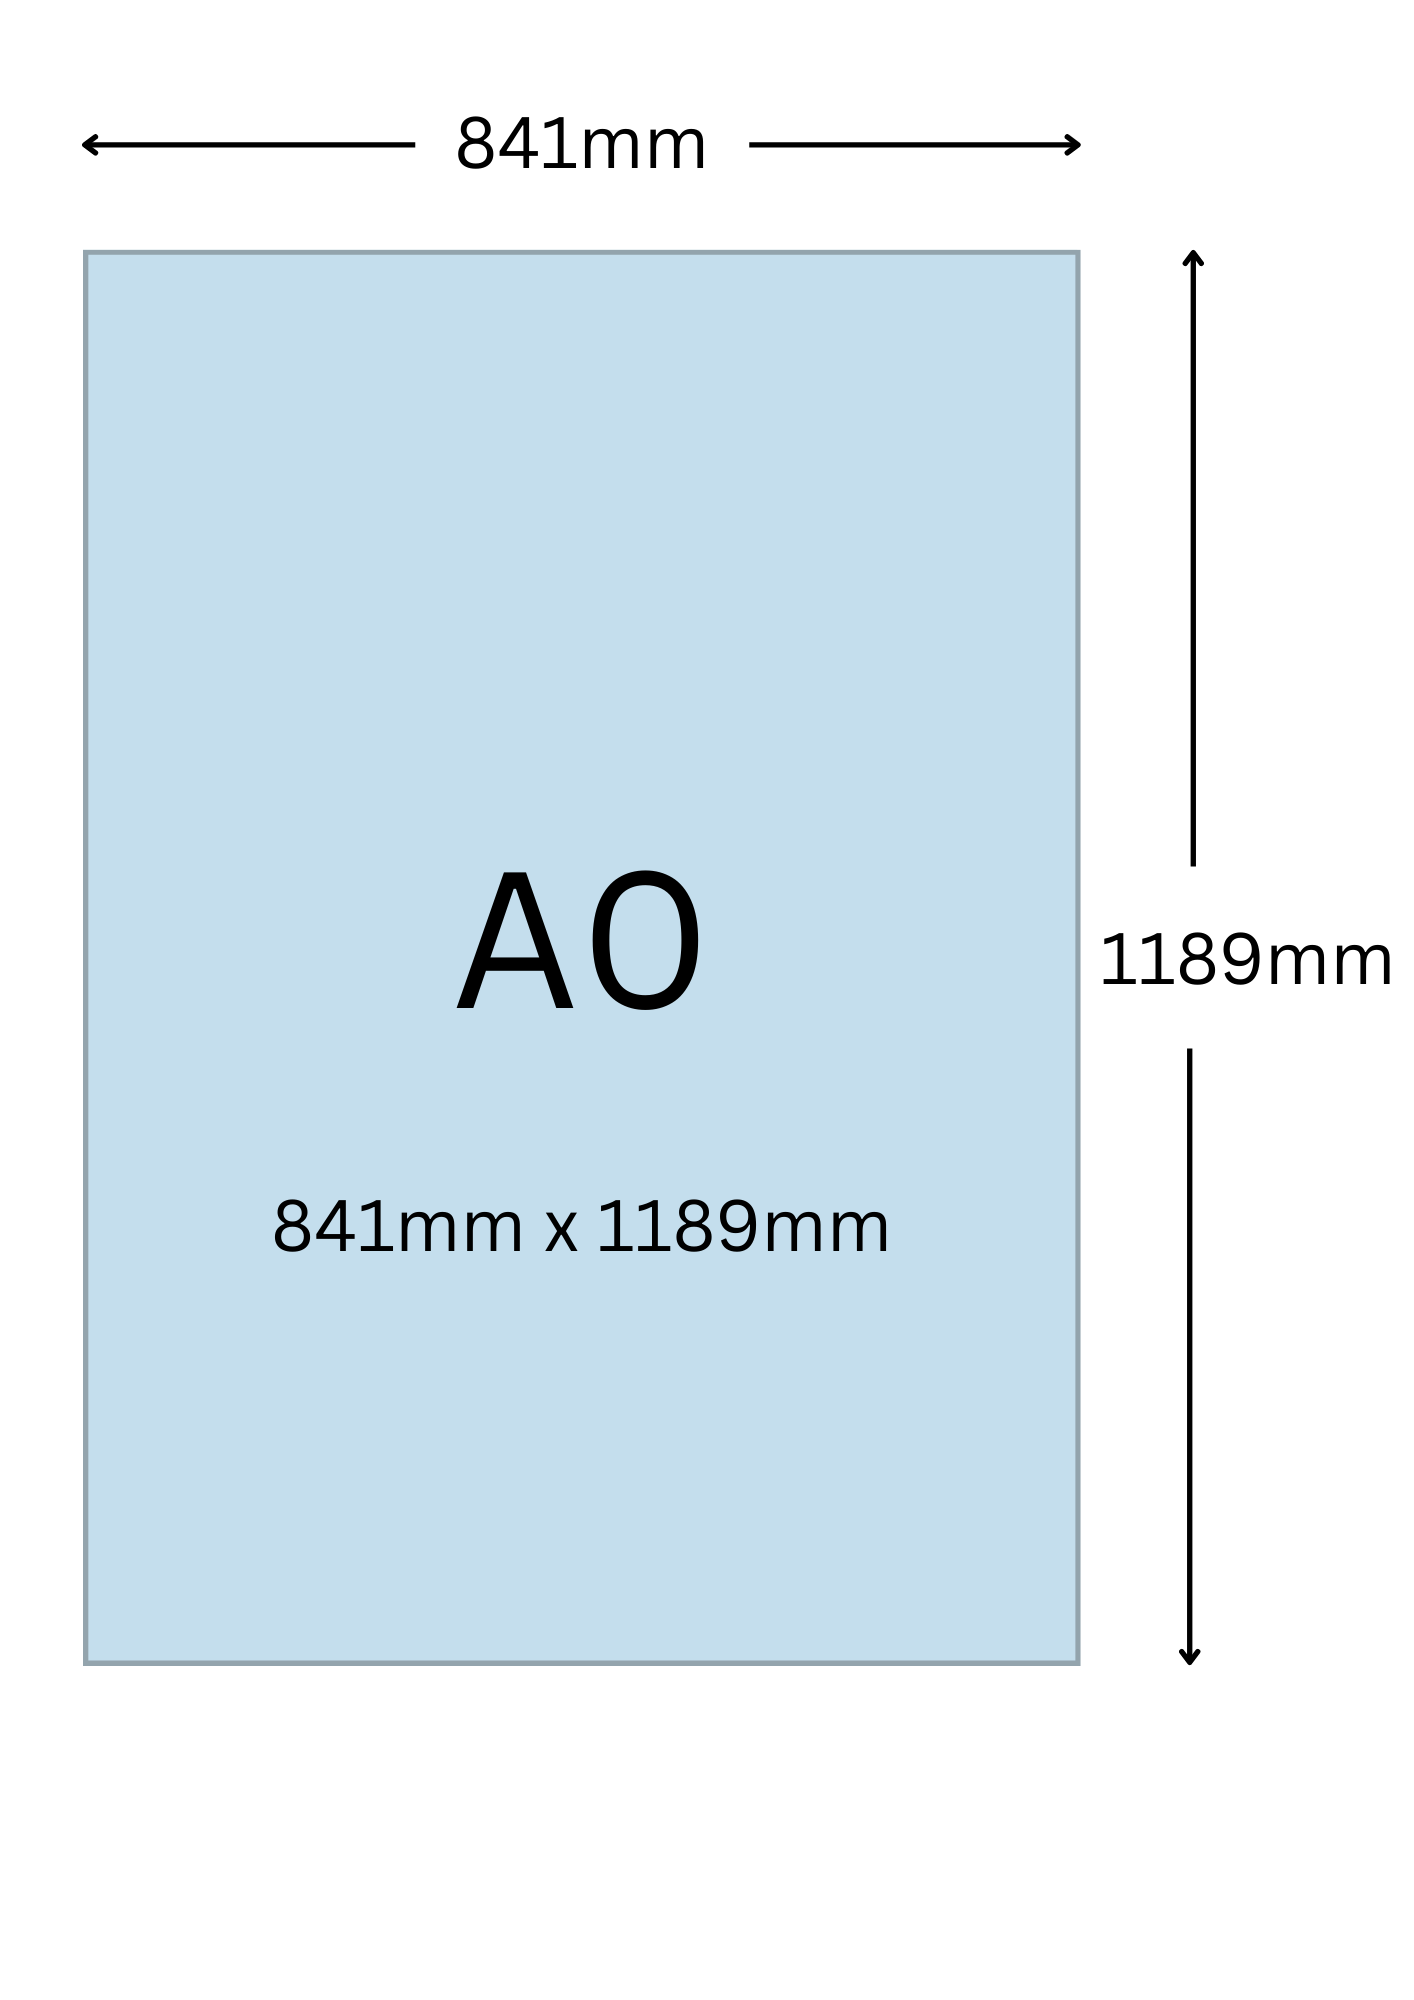 A0尺寸公分, A0紙張尺寸大小, A0紙張對應開數是幾開